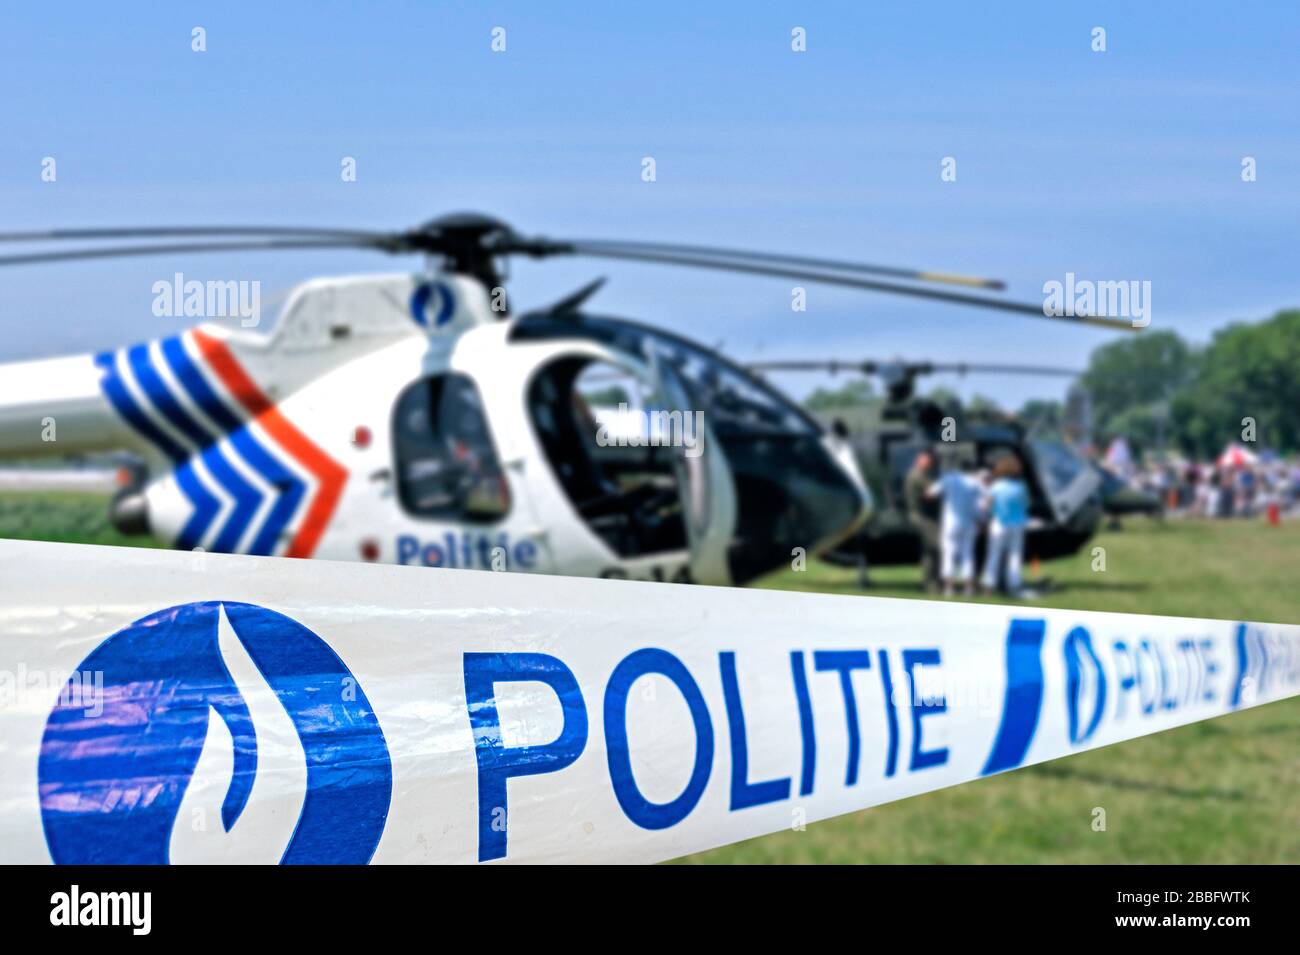 Ruban politie / police devant l'hélicoptère belge de police, Belgique Banque D'Images